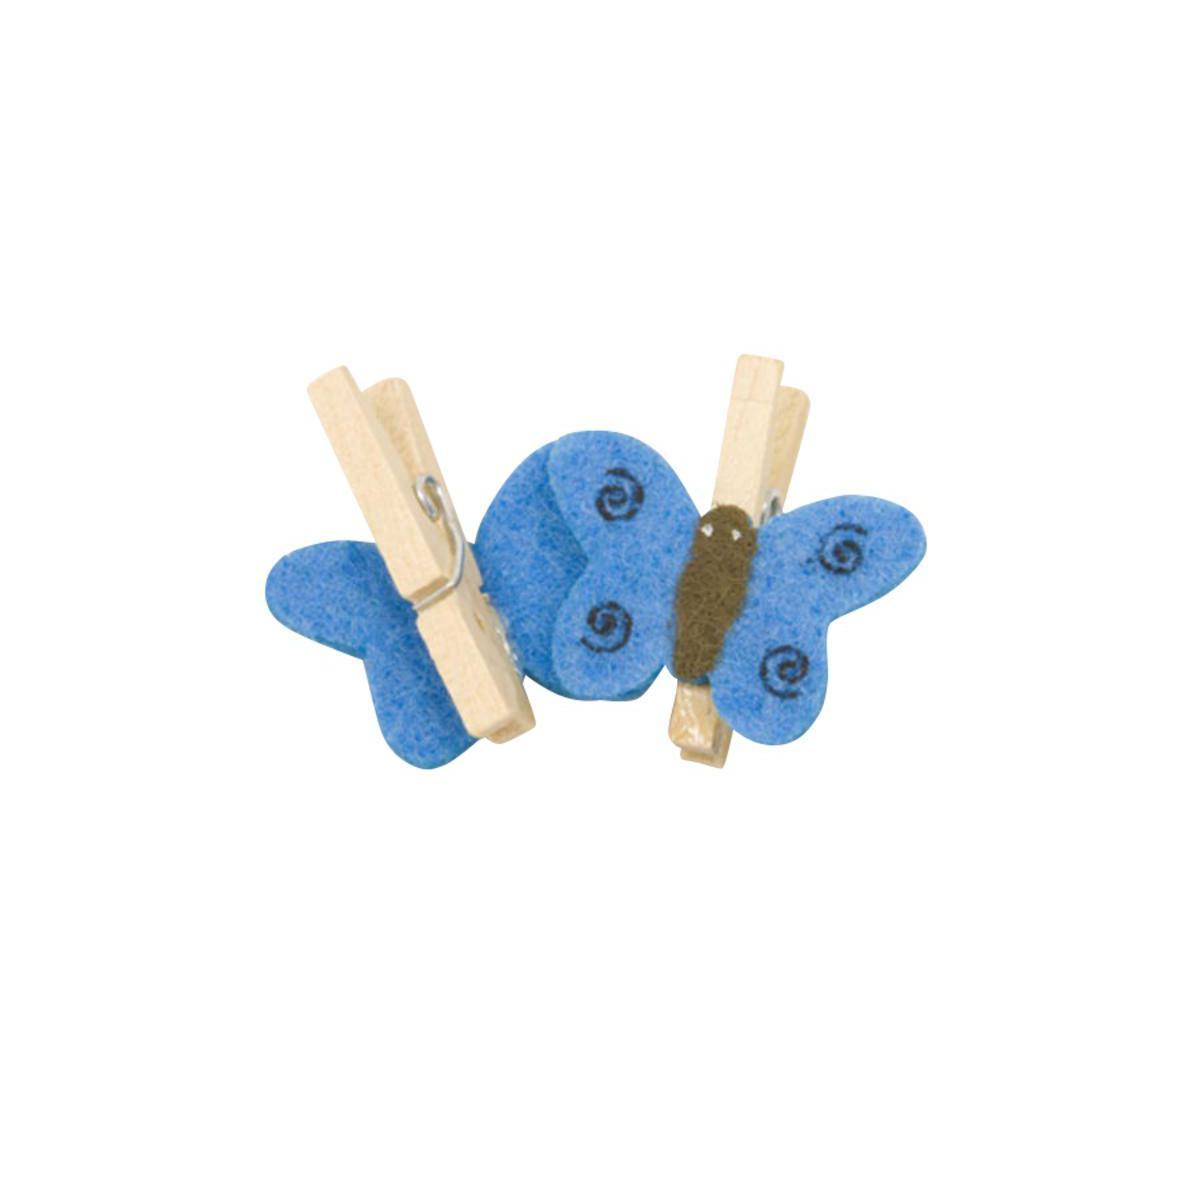 10 pinces décoratives avec papillon - Bois et feutrine - 2,5 x 2,5 cm - Bleu turquoise